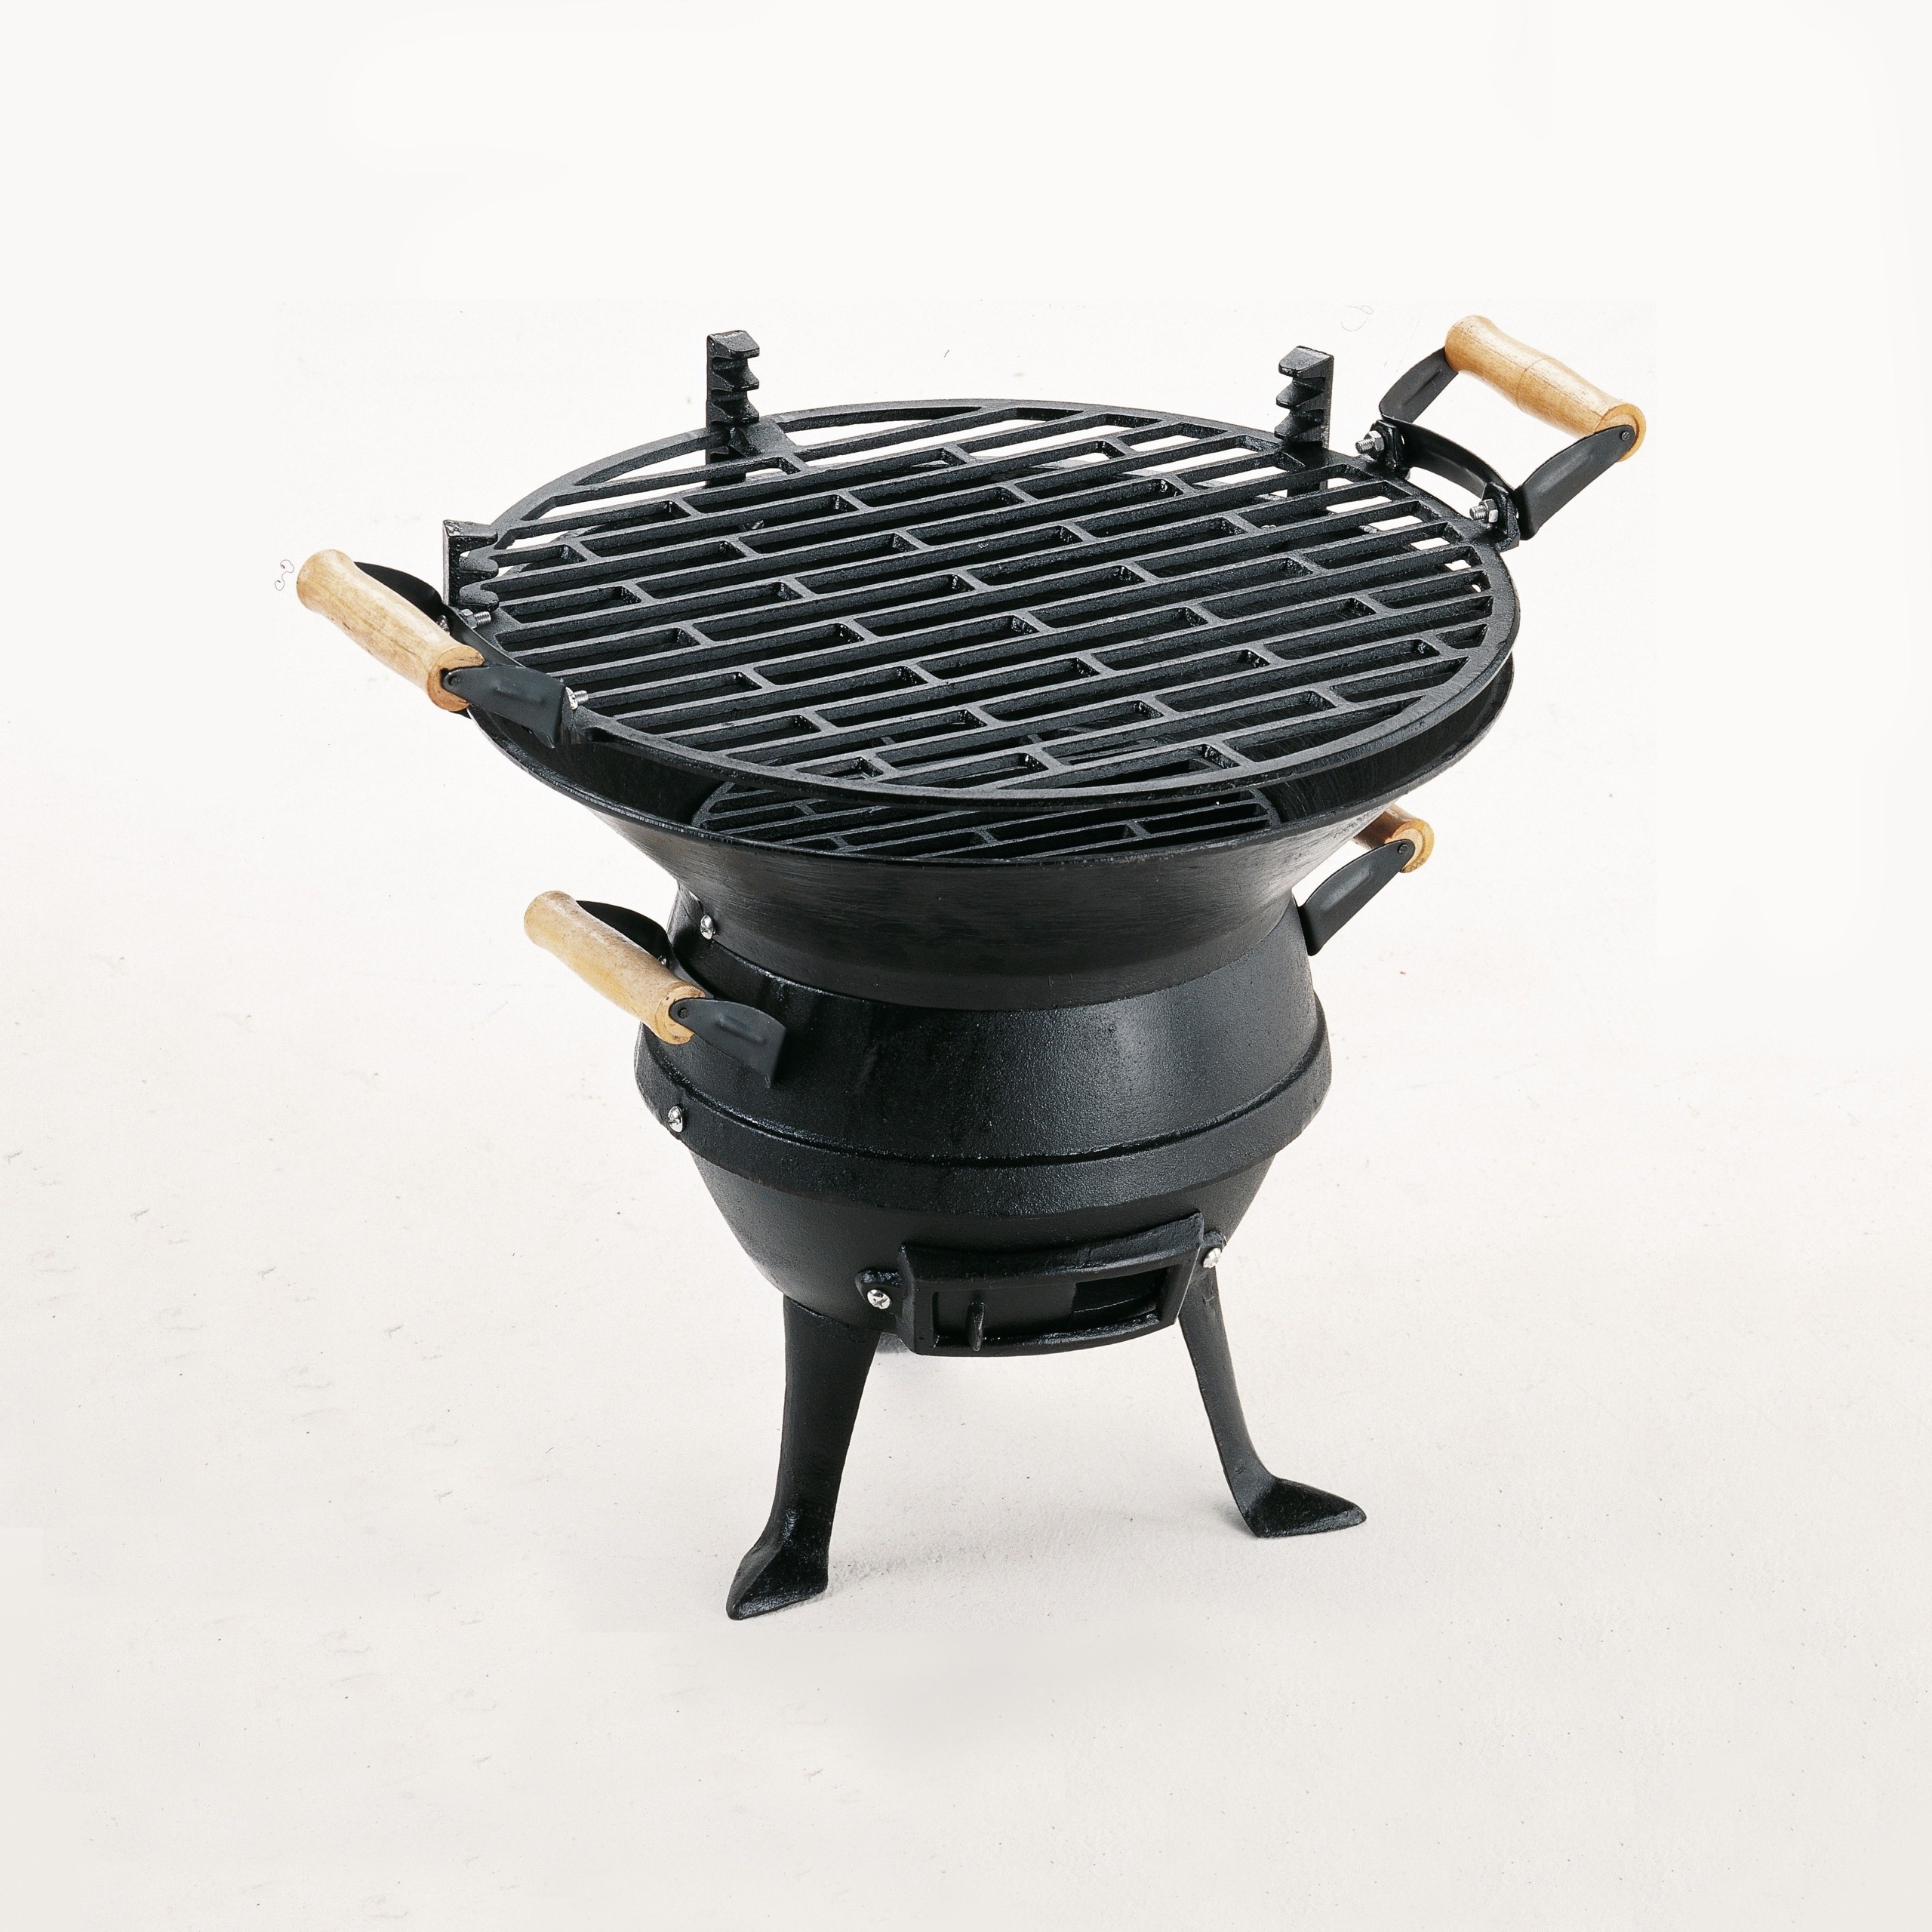 Lodge portable grill : r/castiron